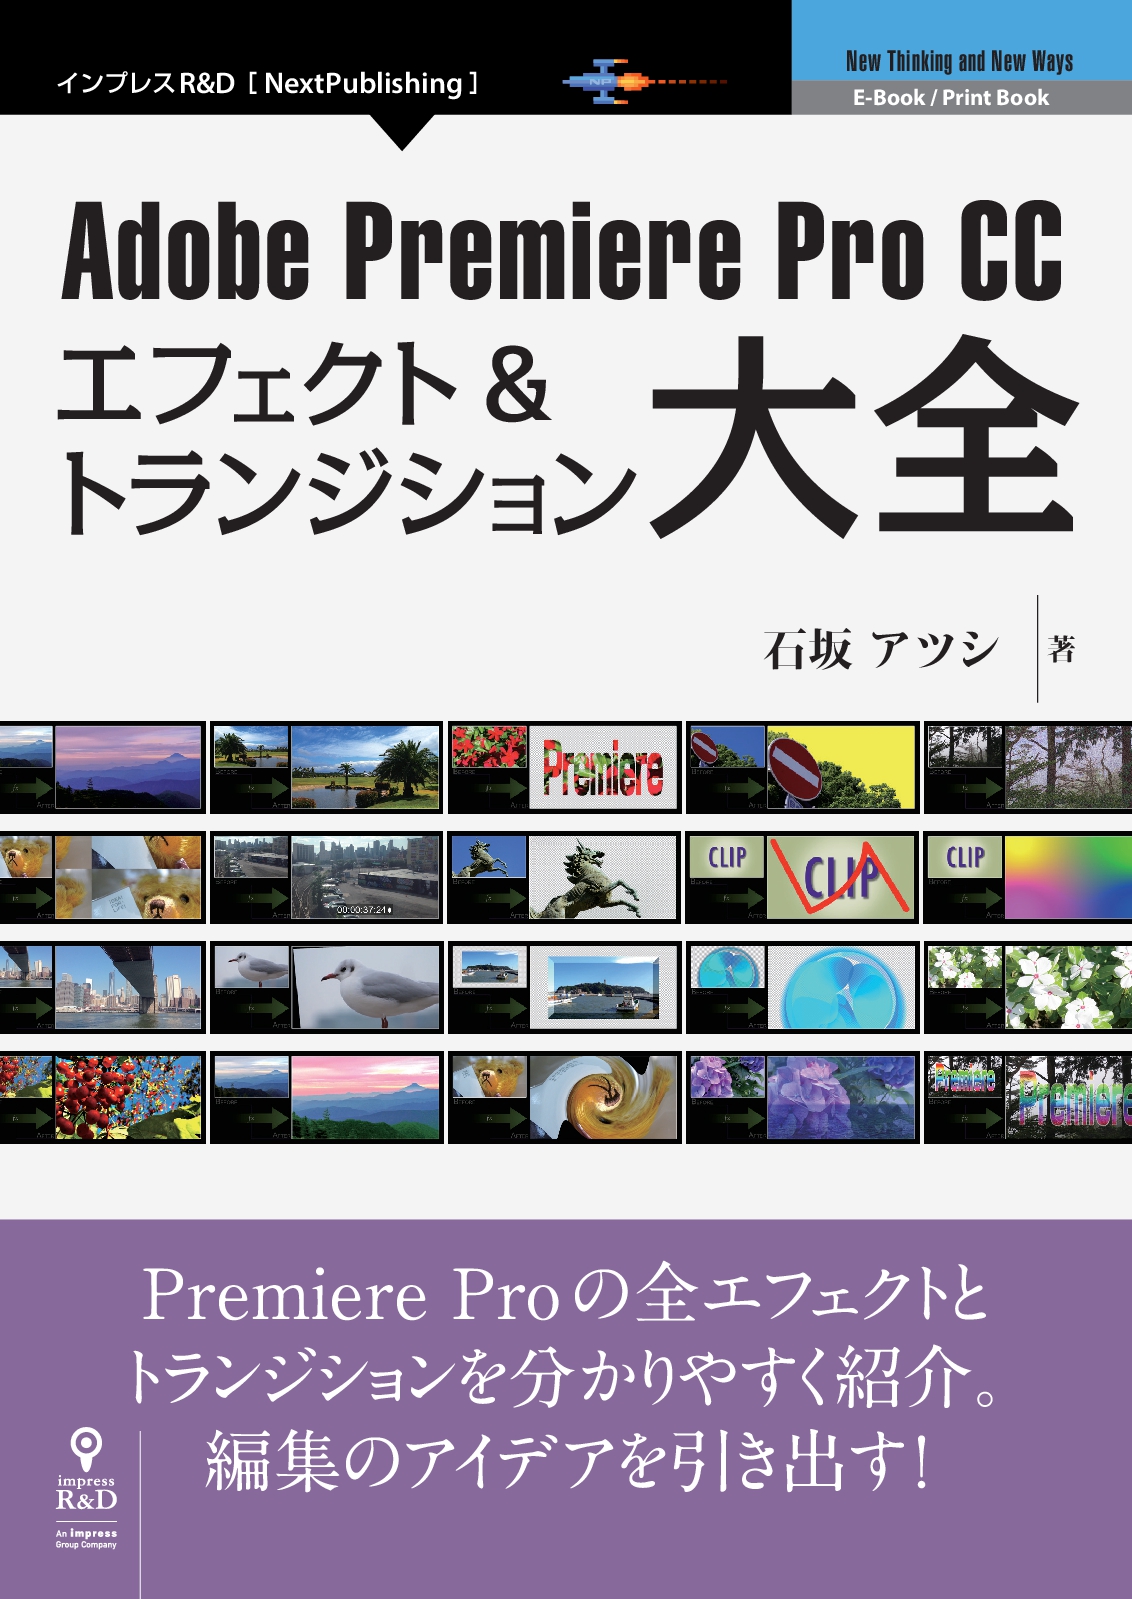 すべてのエフェクトを詳細に解説 Adobe Premiere Pro Cc エフェクト トランジション 大全 編集のアイデアを引き出すための解説書の決定版 株式会社インプレスホールディングスのプレスリリース